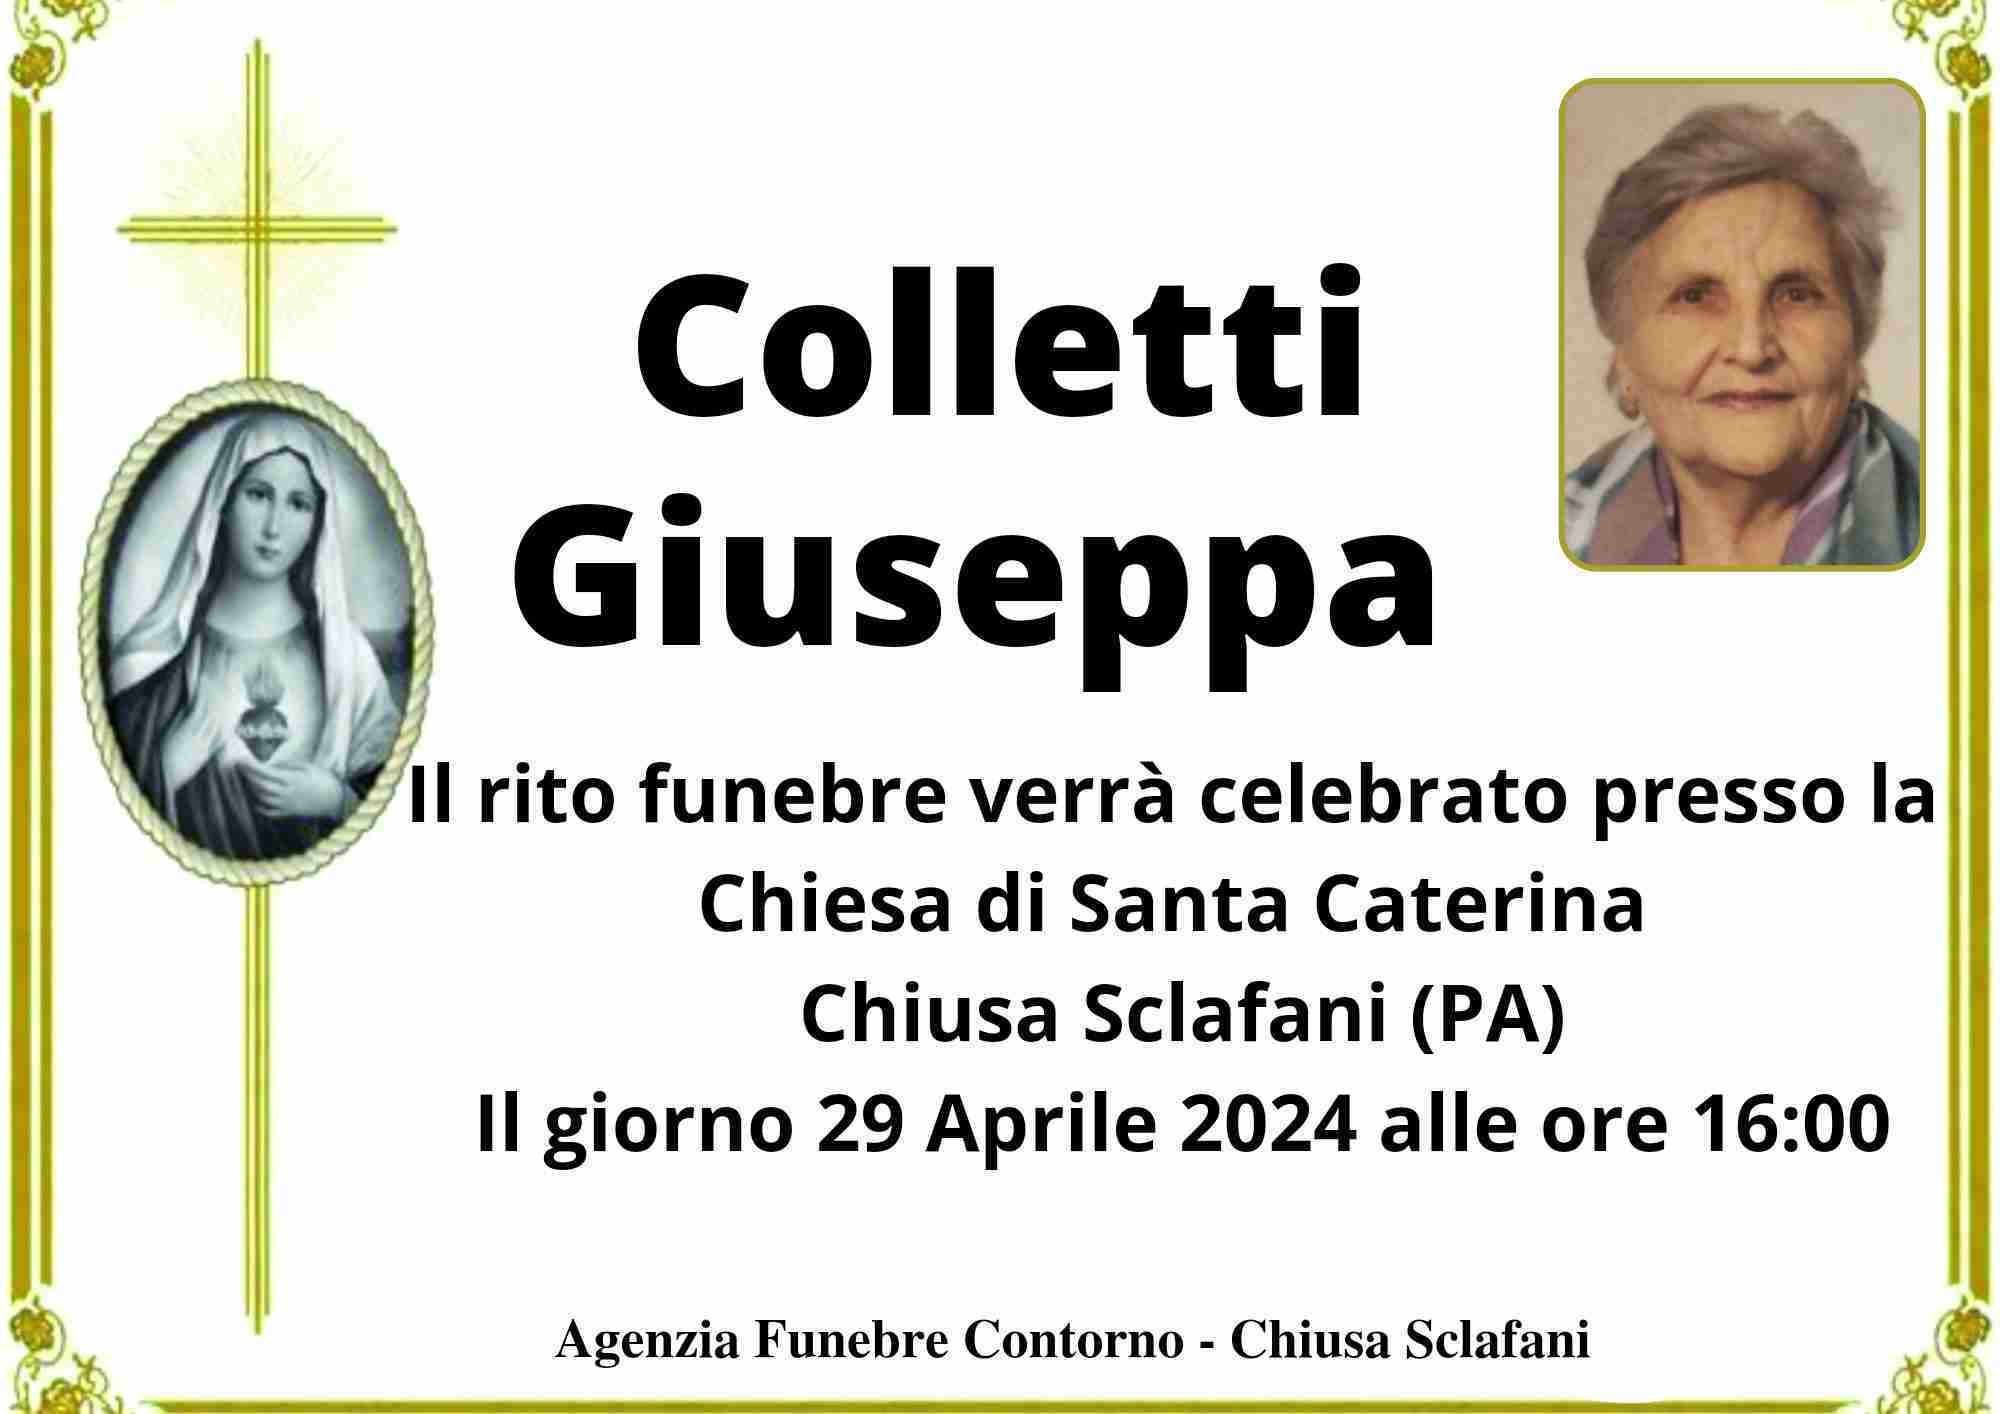 Giuseppa Colletti